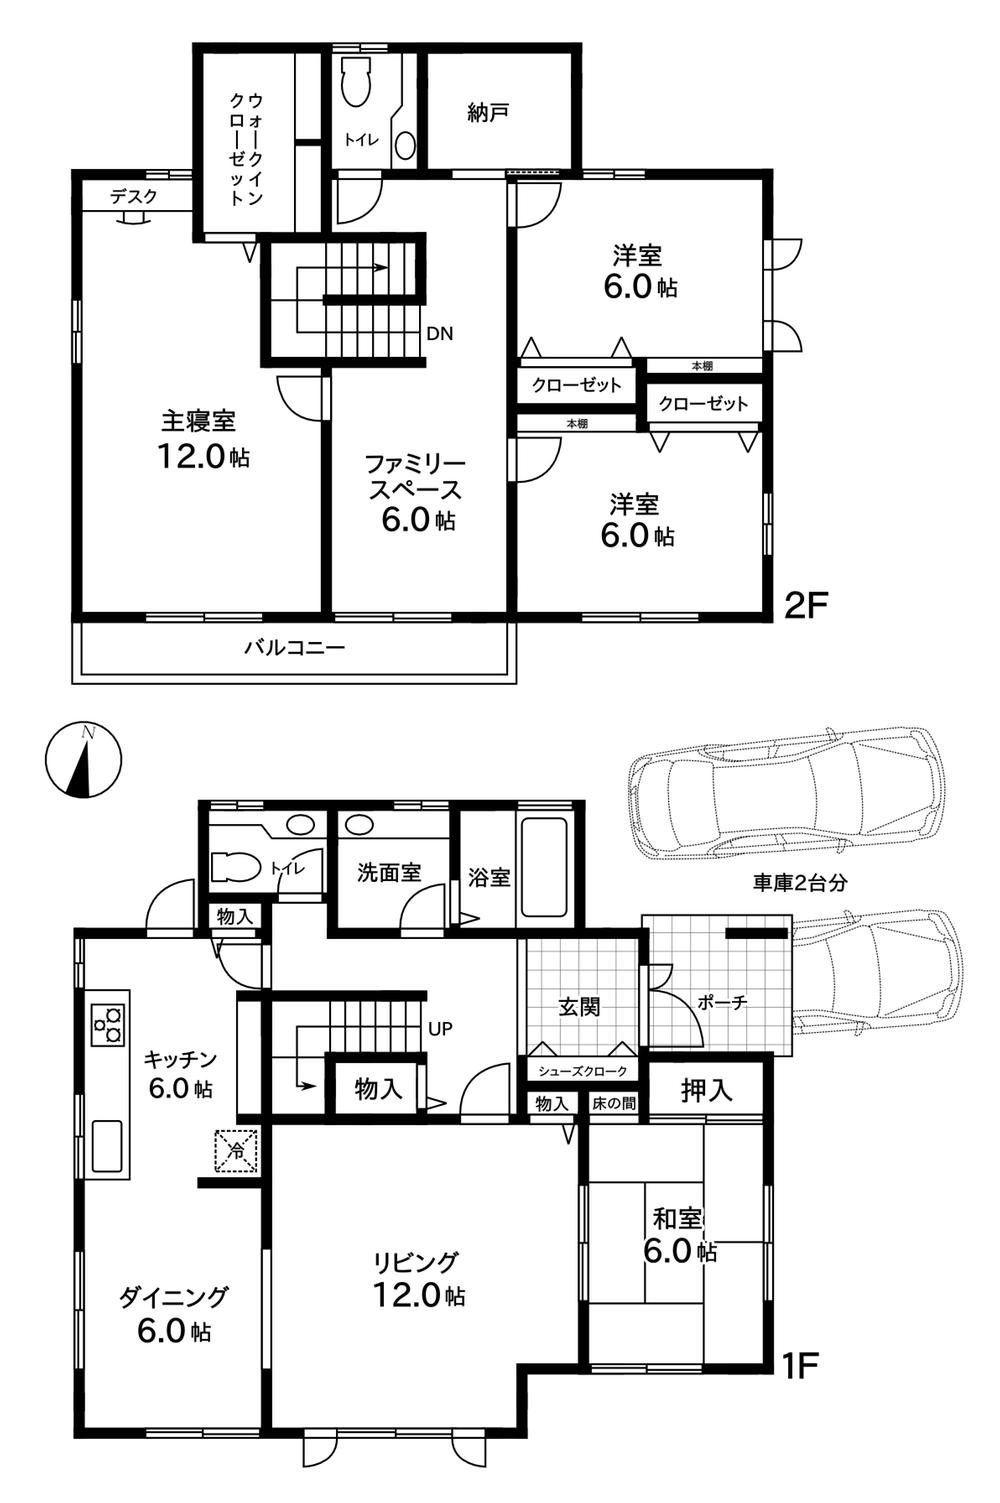 Floor plan. 29,800,000 yen, 4LDK + 2S (storeroom), Land area 215.23 sq m , Building area 152.12 sq m